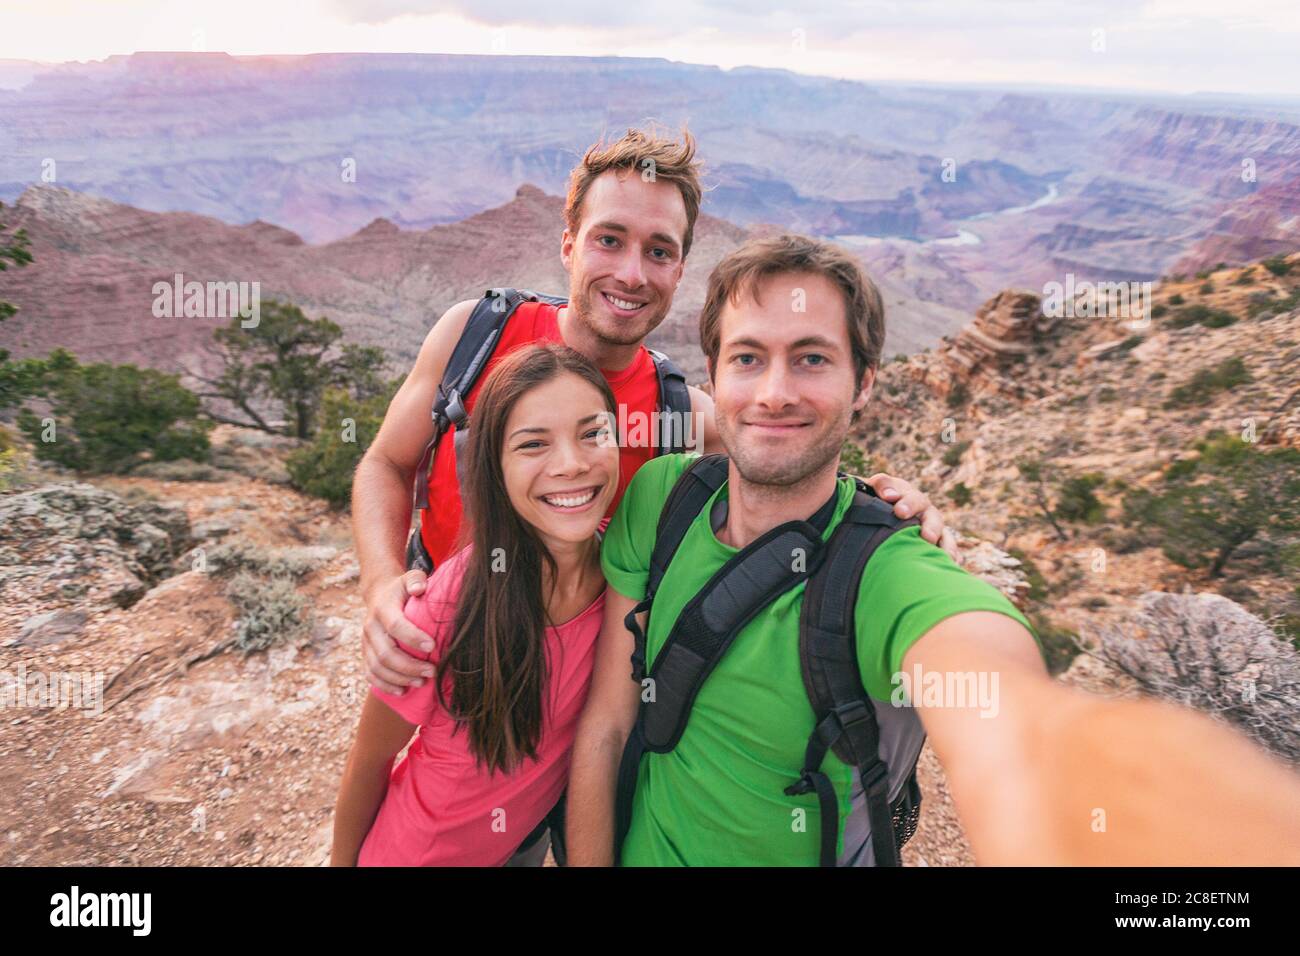 Selfie Gruppe von Touristen Freunde Wanderer Wandern im Freien. Glückliche Leute, die zusammen ein Selbstporträt-Foto im Grand Canyon Naturpark machen, reisen Urlaub Stockfoto